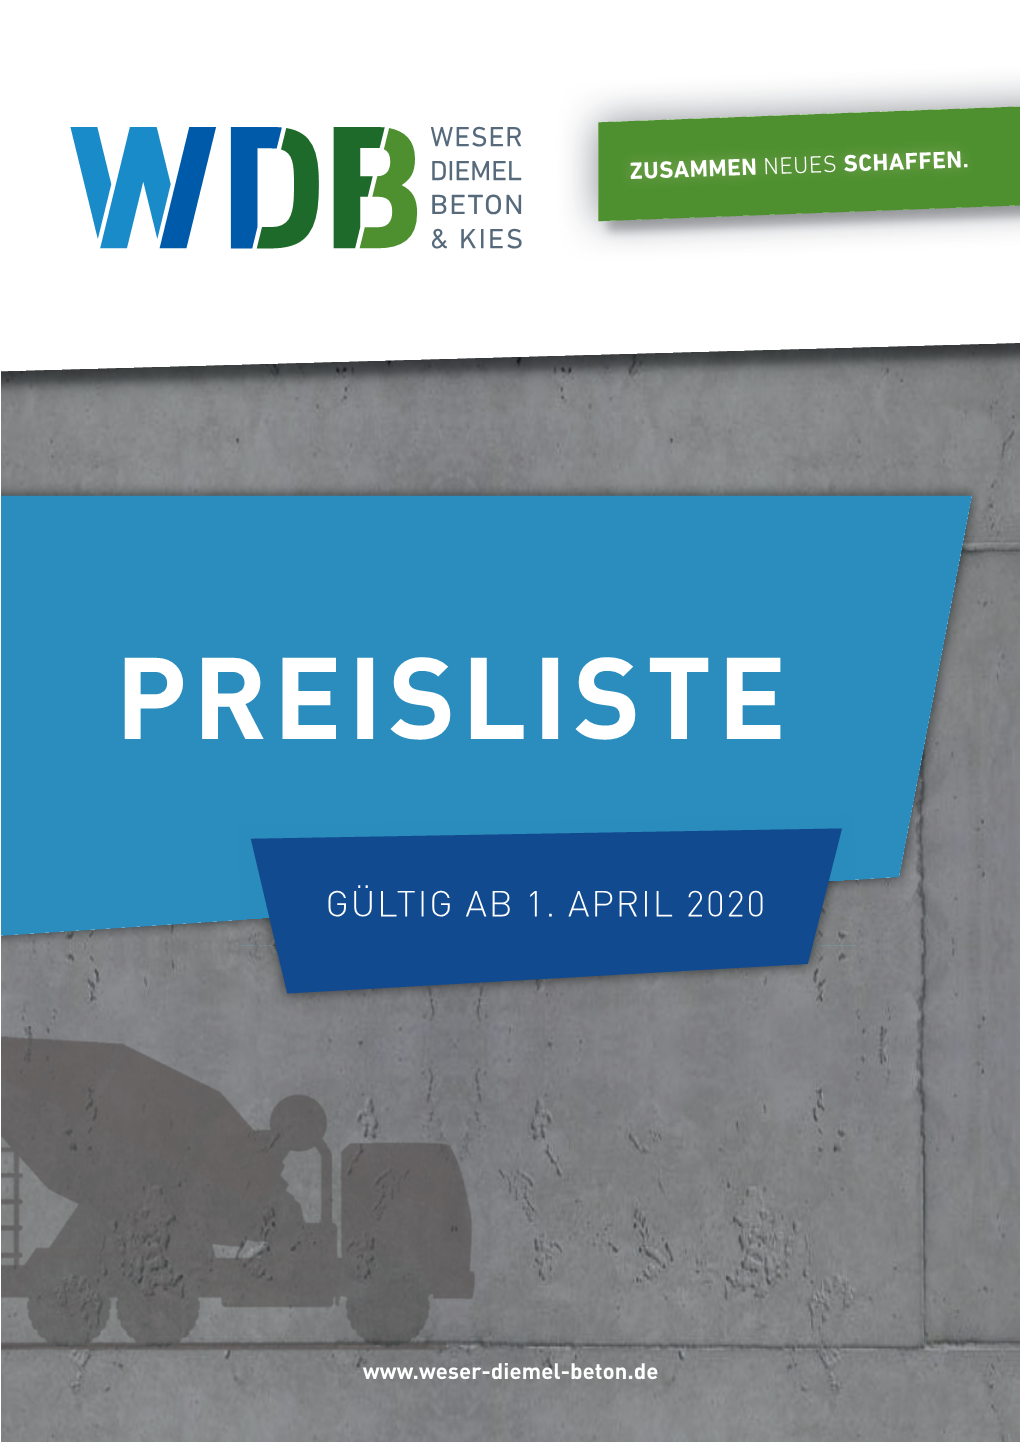 Wdb-Preisliste-2020.Pdf